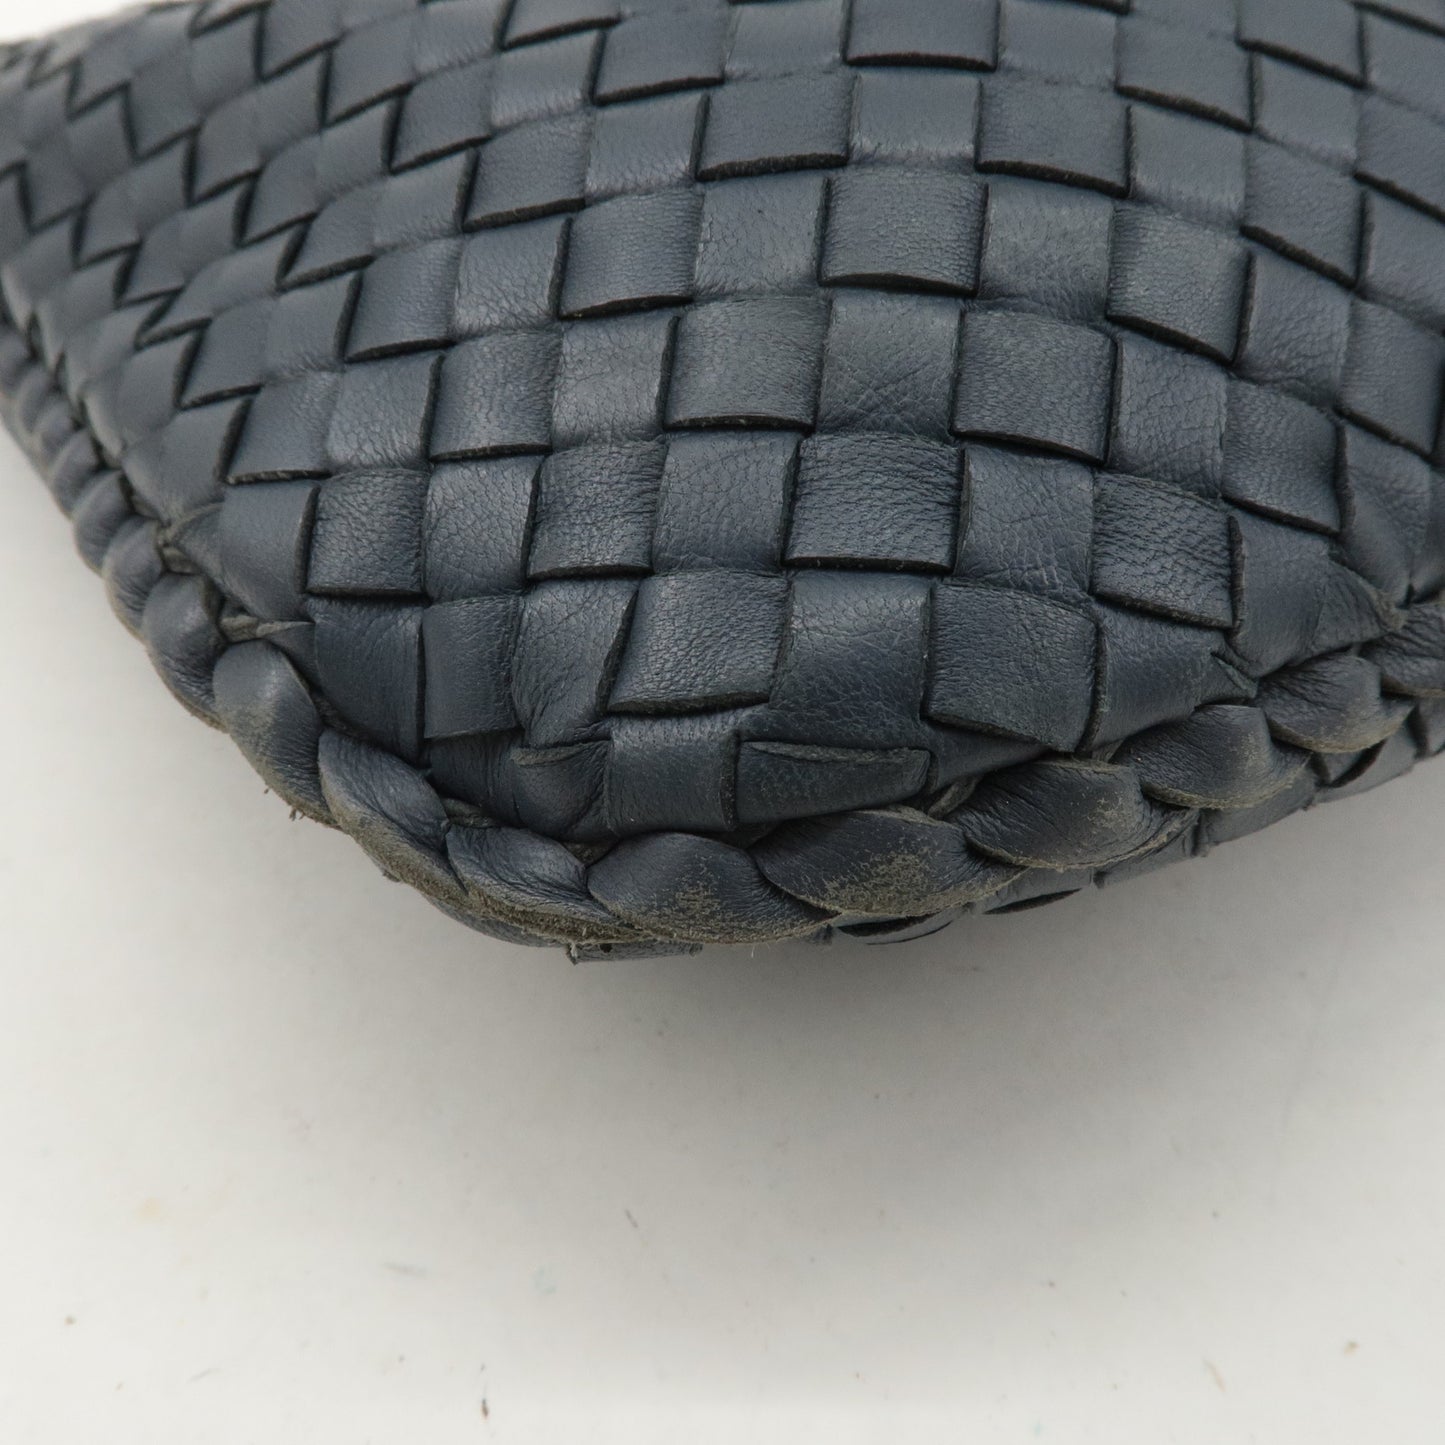 BOTTEGA VENETA Hobo Intrecciato Leather Shoulder Bag 115653